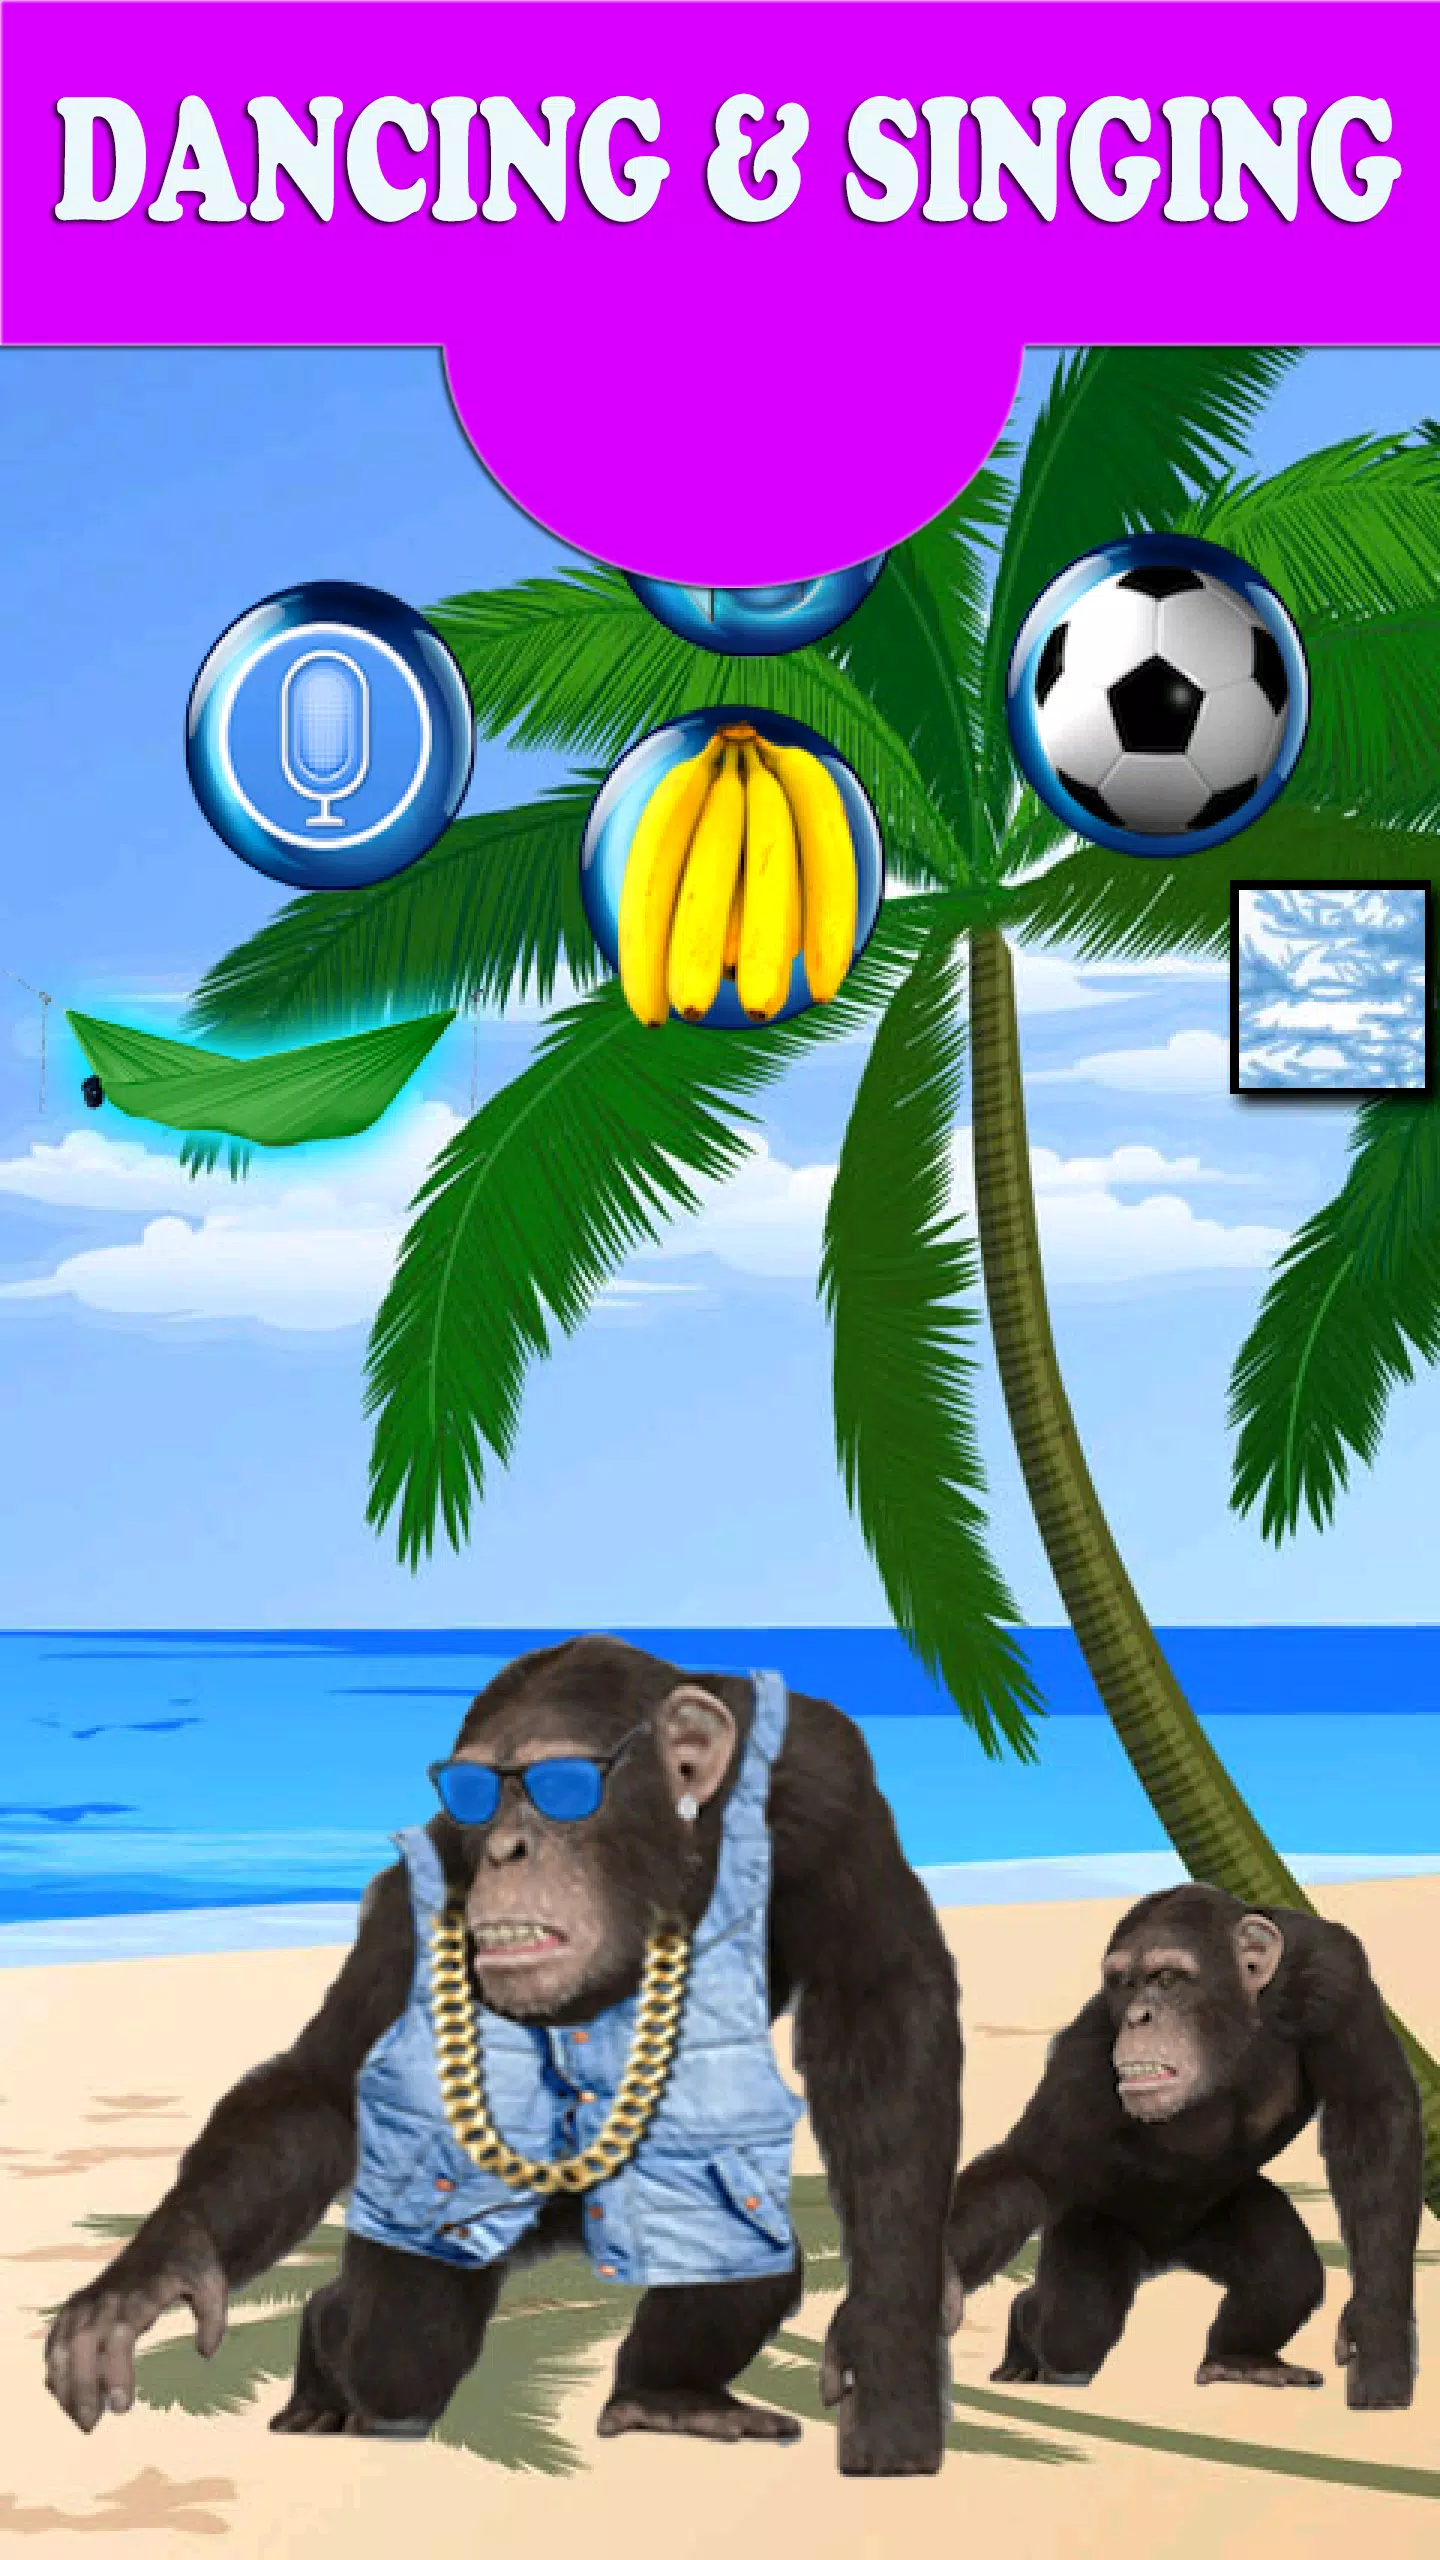 Macaco Falante – Apps no Google Play